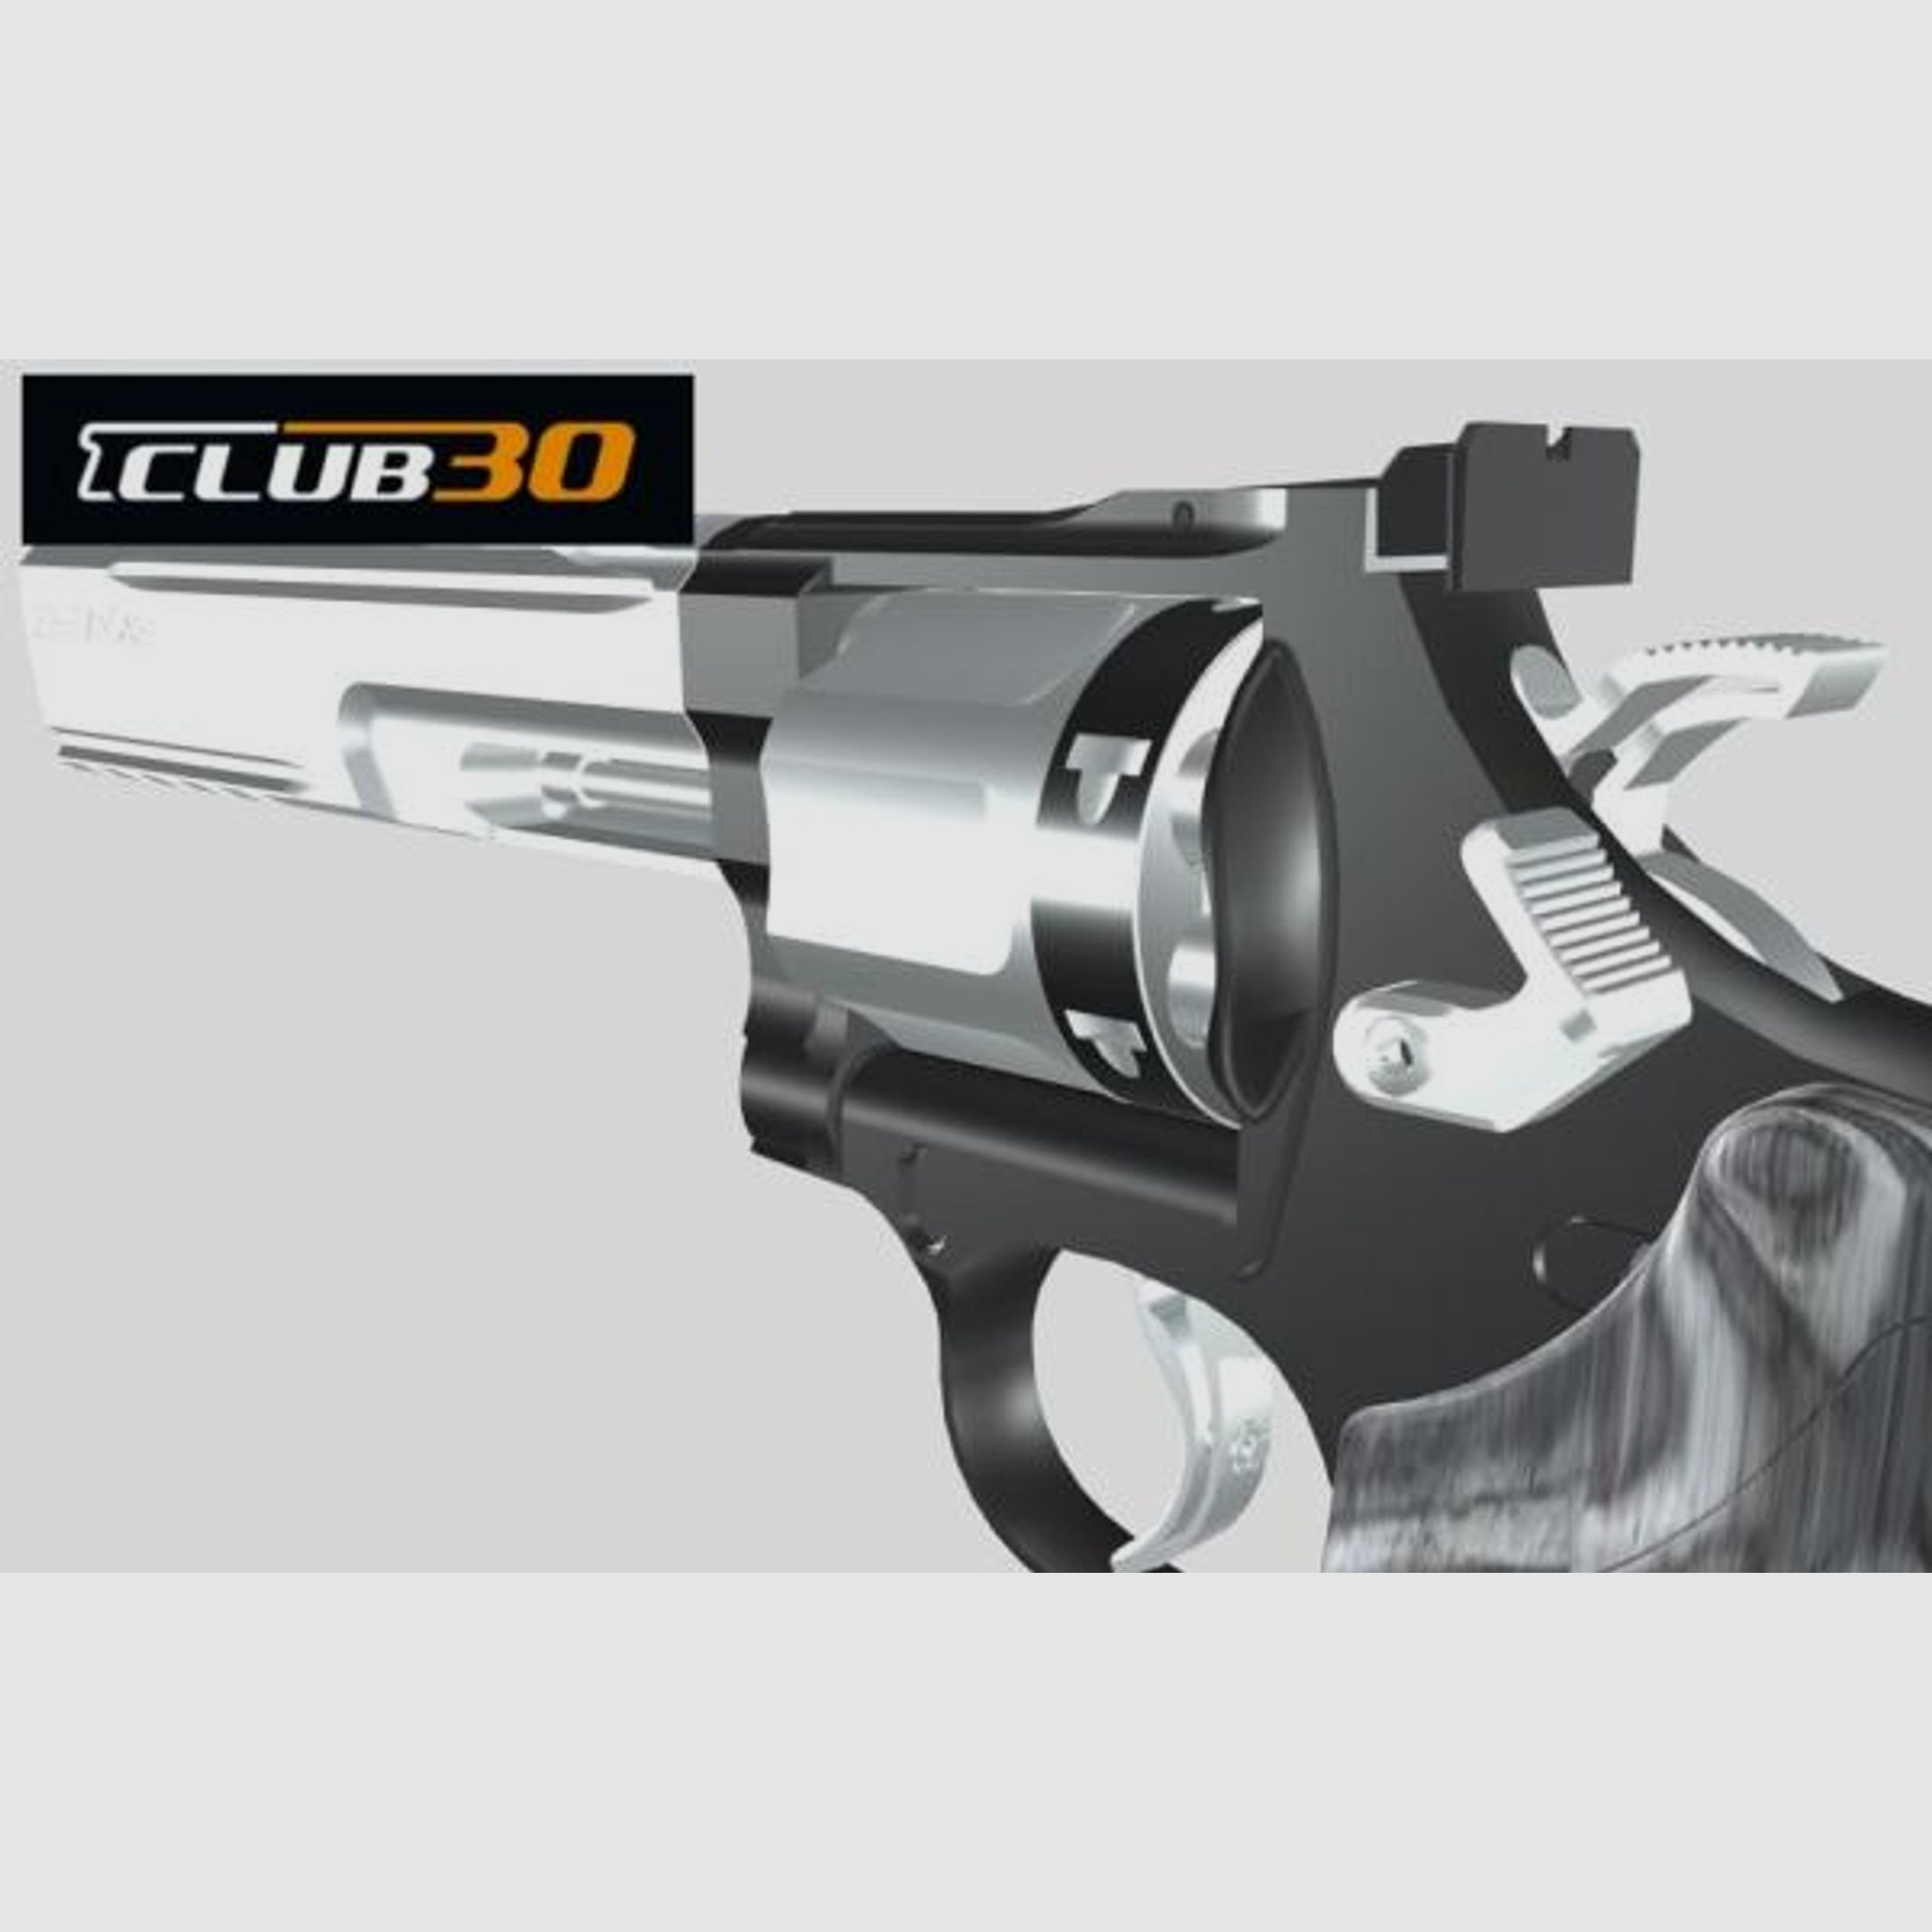 CLUB 30 Tuning/Ersatzteil f. Revolver Trommelschieber S&W u.a. Ar-Trade II    -stainless